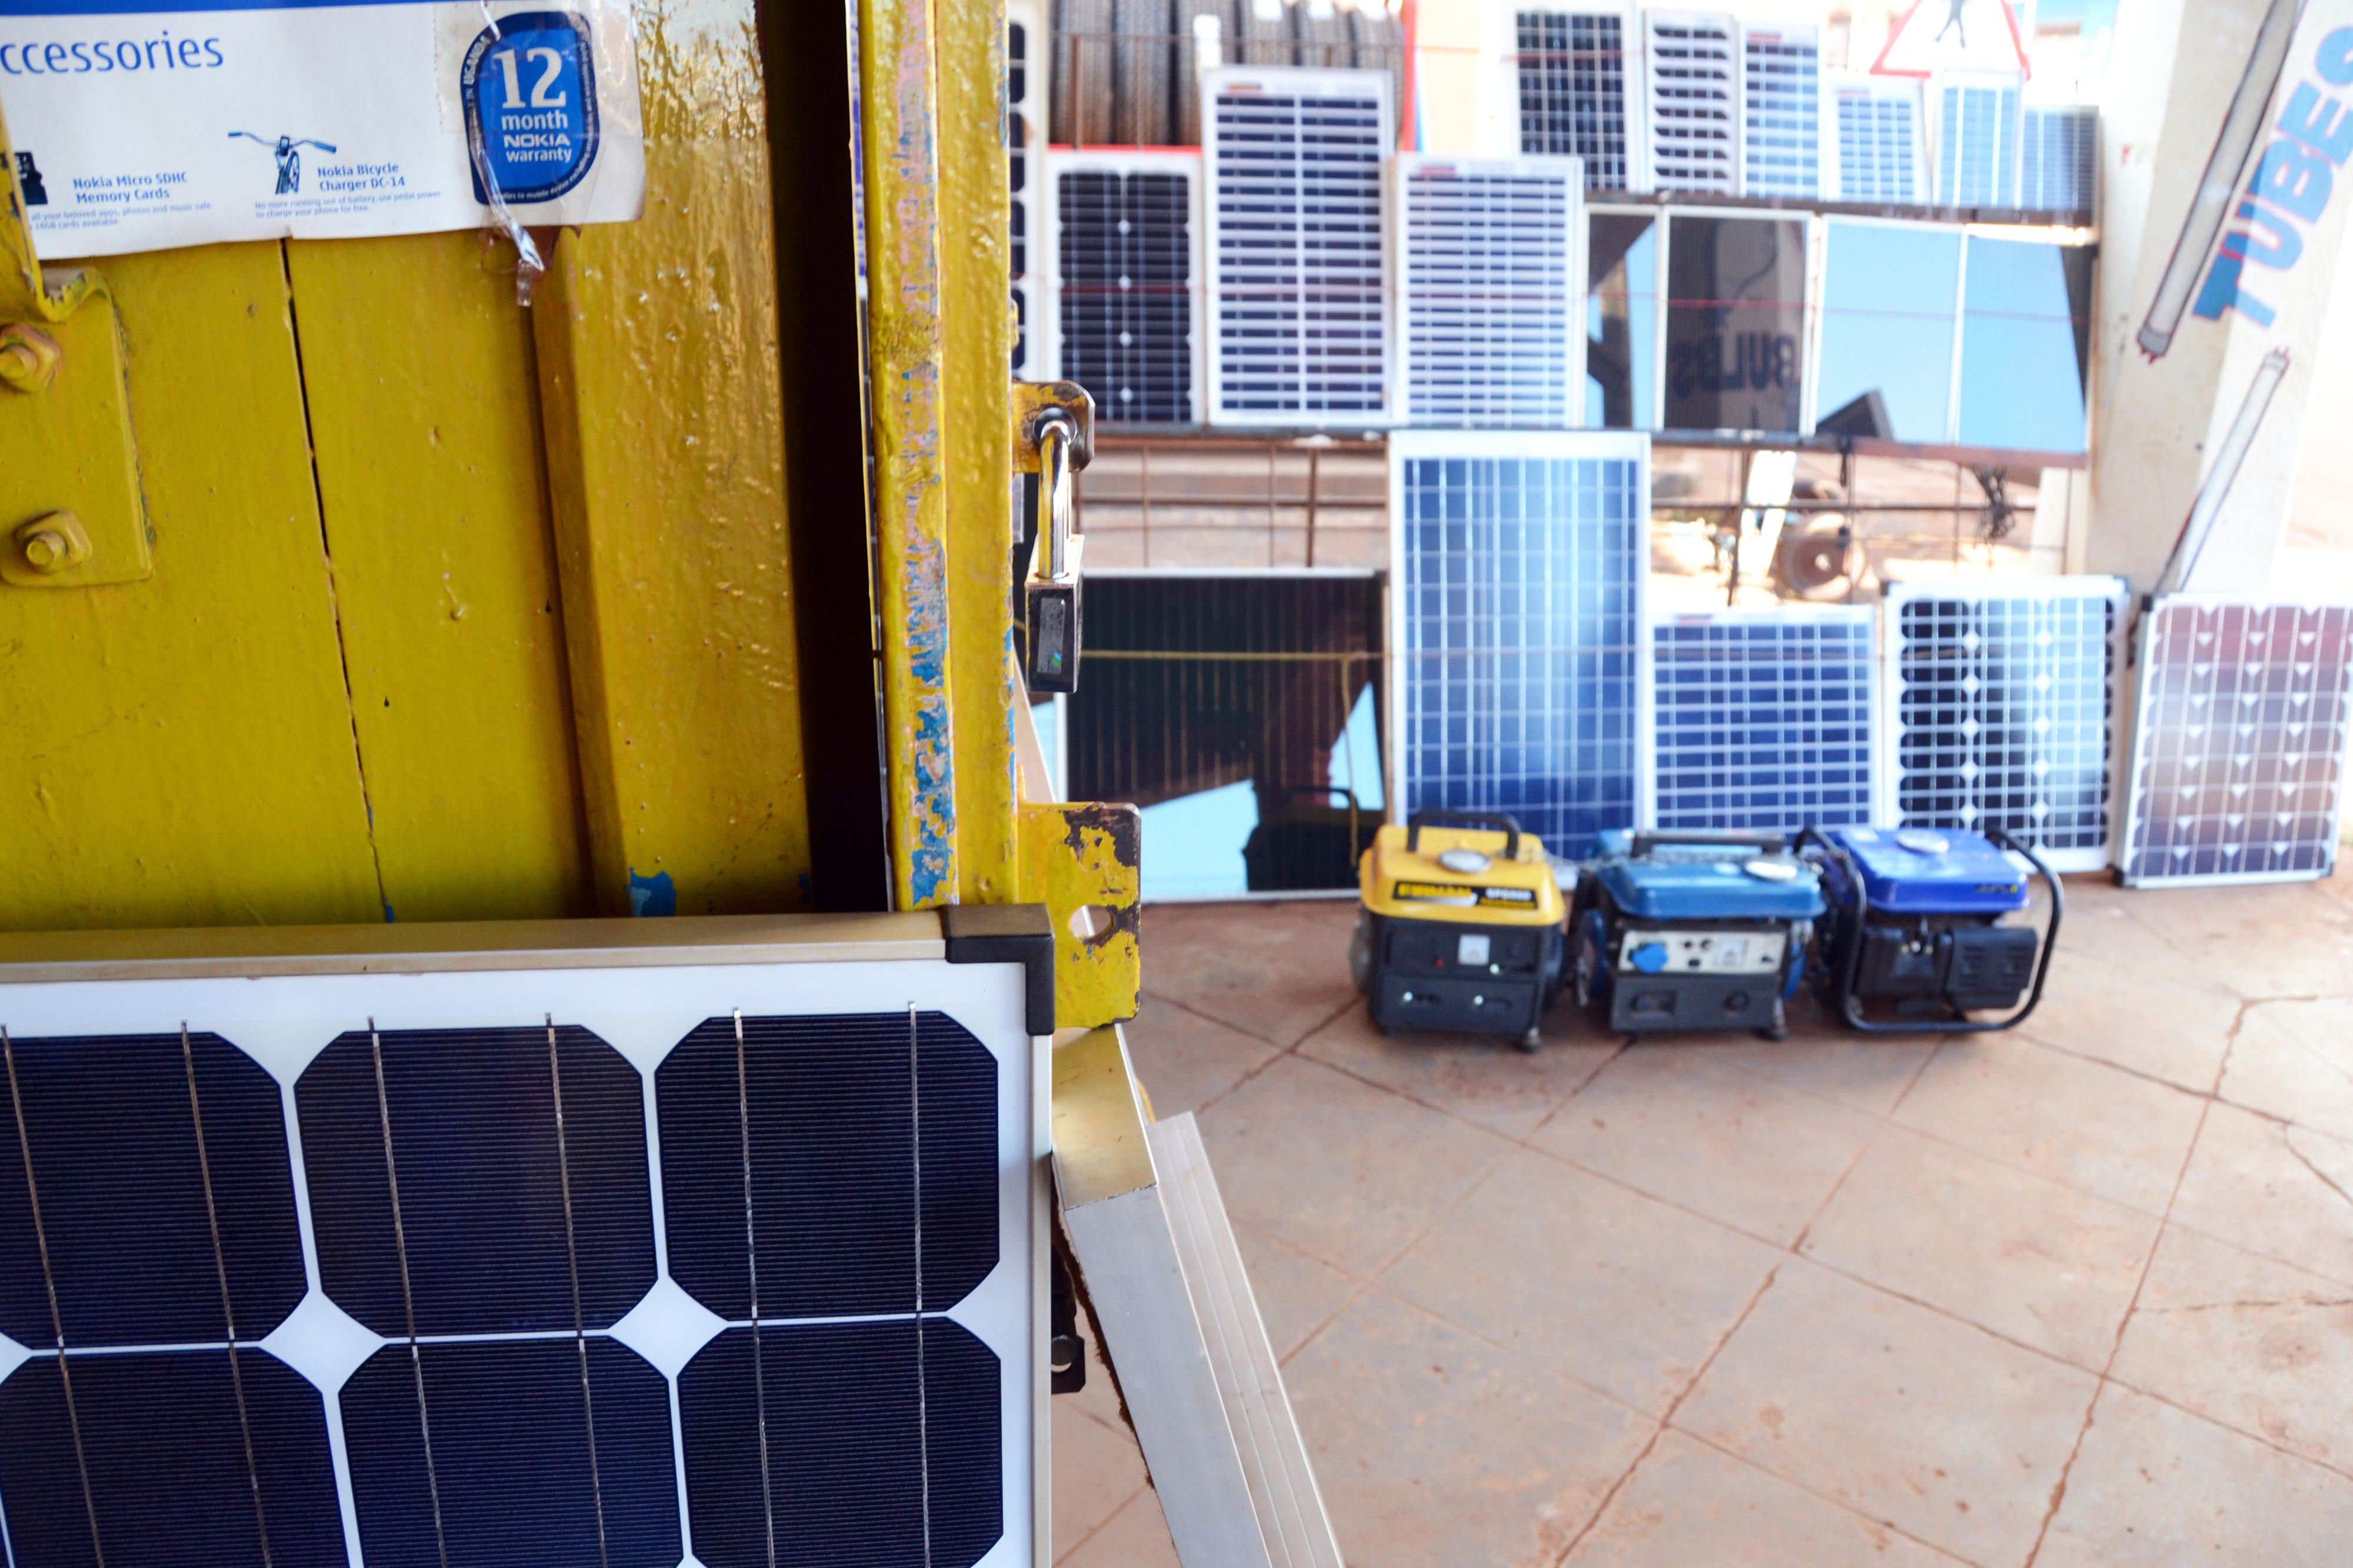 Geschäft in Uganda, das Solarpaneele und Solarzubehör verkauft